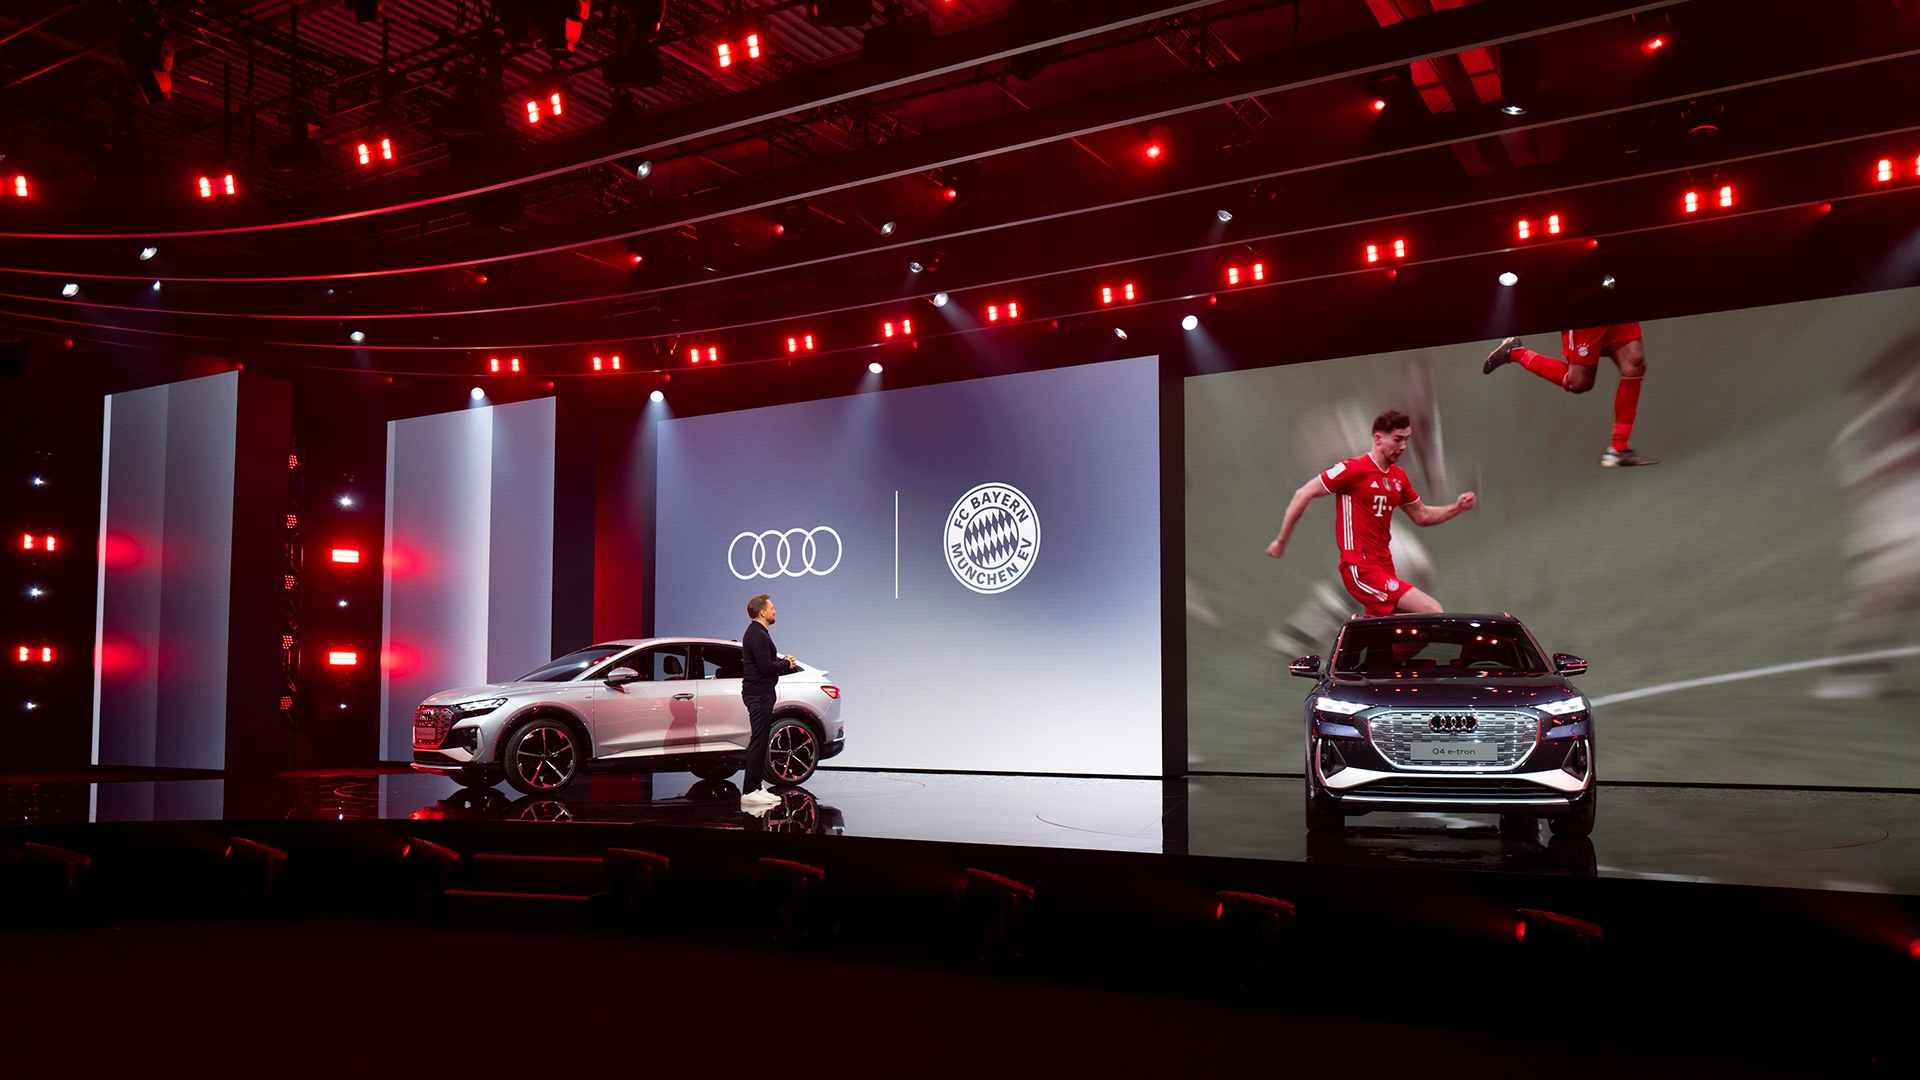 Vrhunec dogodka: nogometaši Leon Goretzka, Alphonso Davies in Lucas Hernandez iz ekipe Bayern Munich so govorili o digitalnih funkcijah Audija e-tron, med katerimi izstopa prikaz z obogateno resničnostjo.